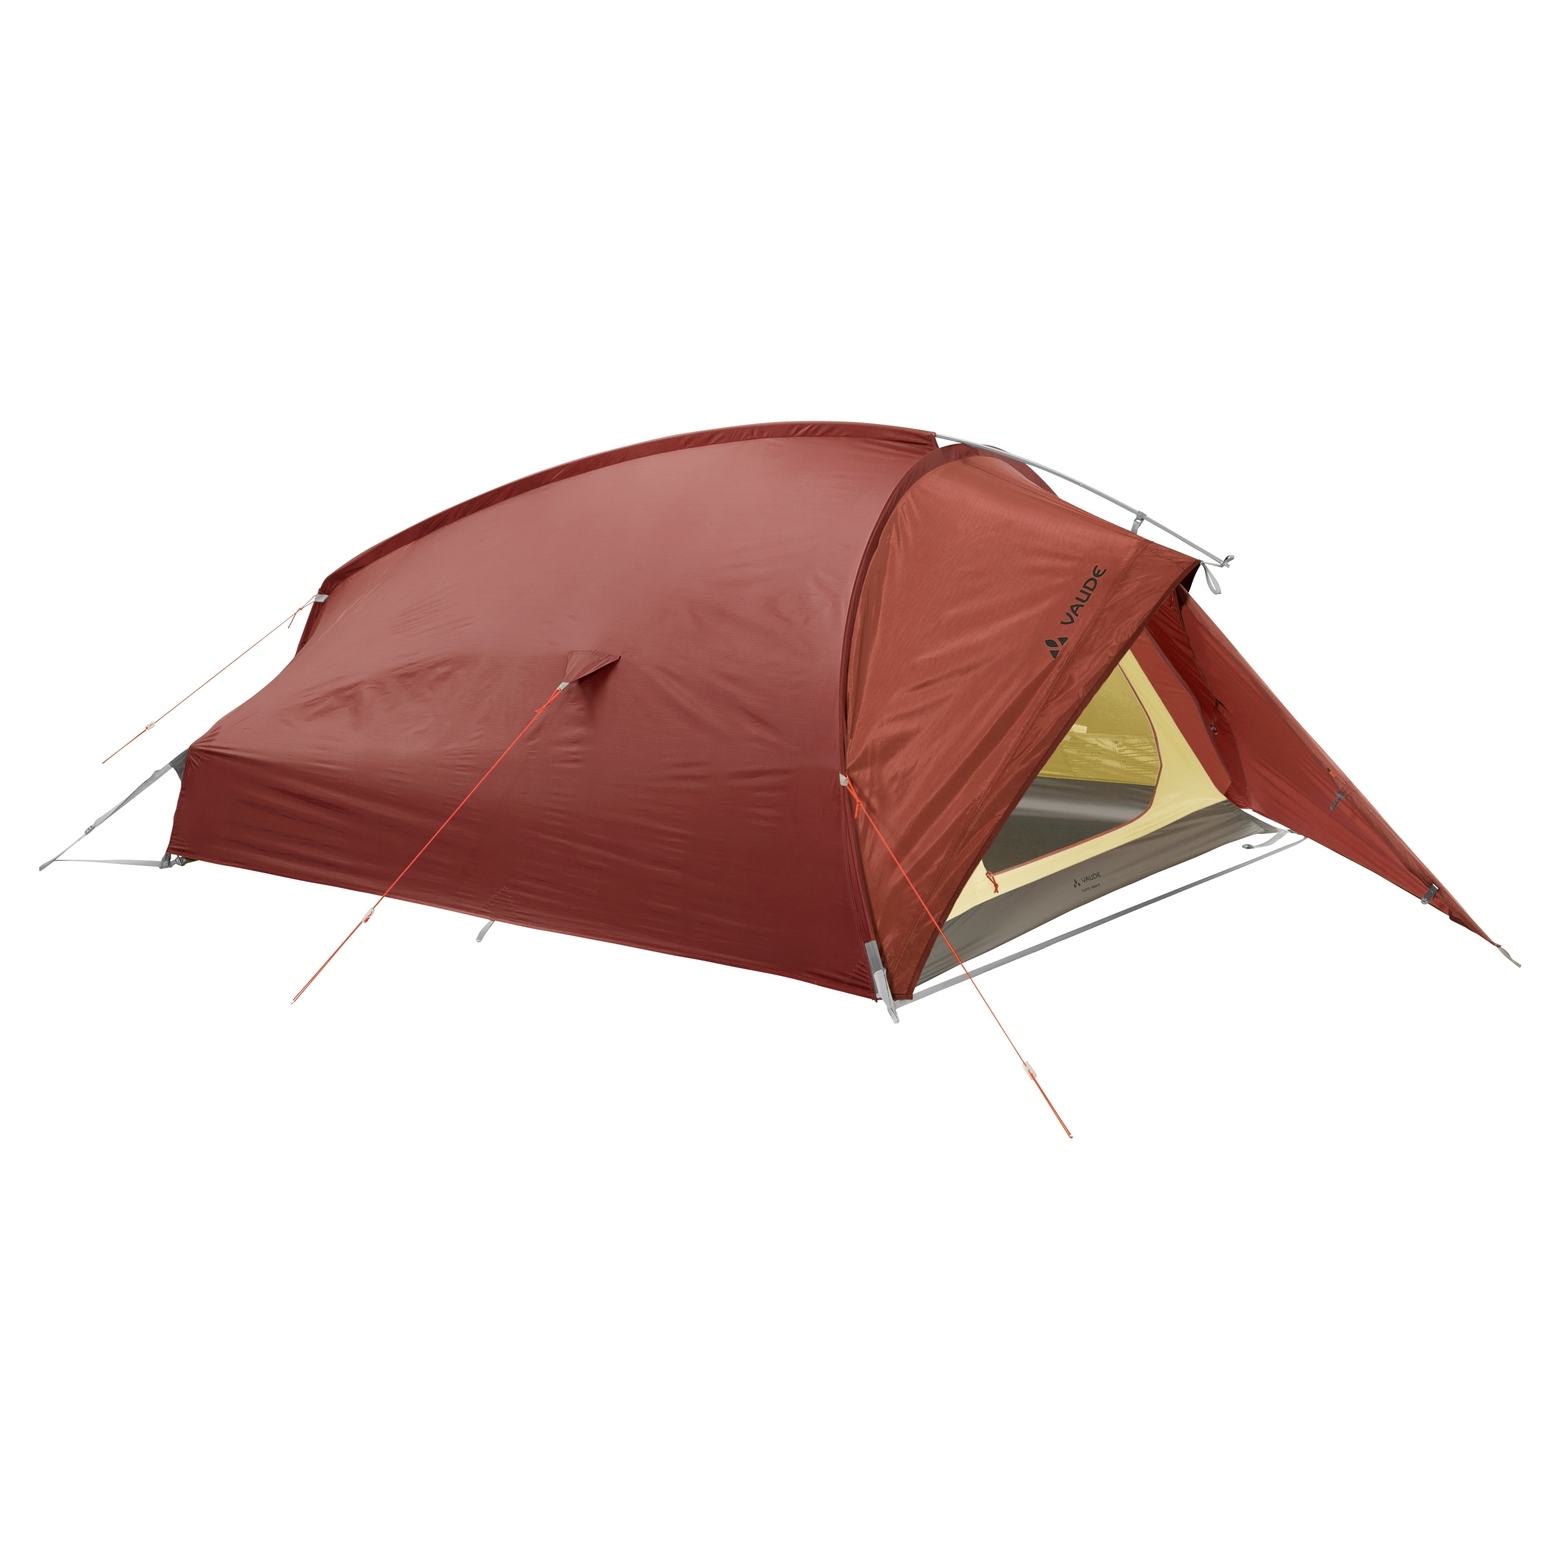 Productfoto van Vaude Taurus 3P Tent - buckeye